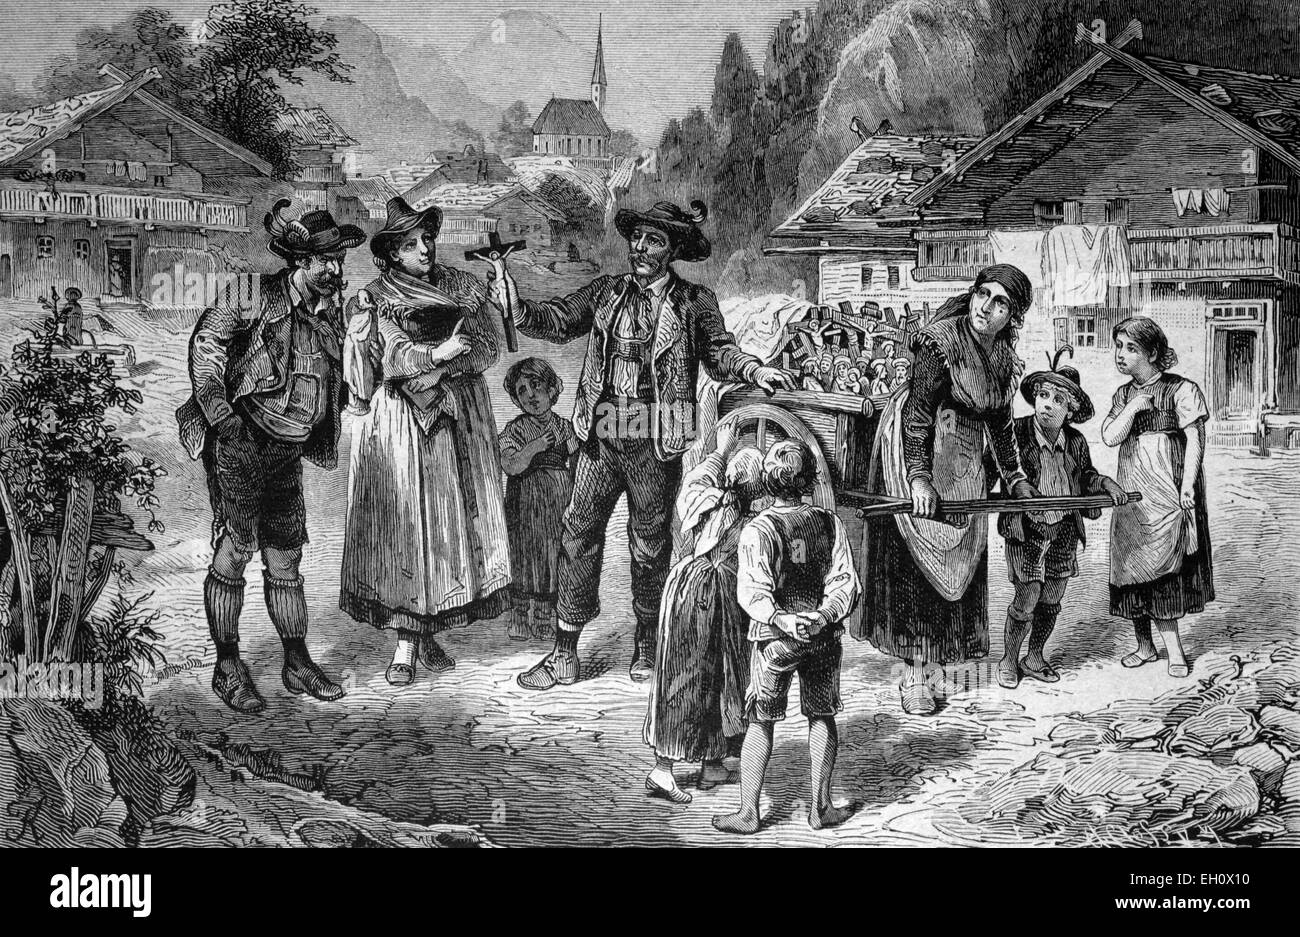 Händler verkaufen religiöse Gegenstände in Tirol, Österreich, historische Abbildung, ca. 1886 Stockfoto